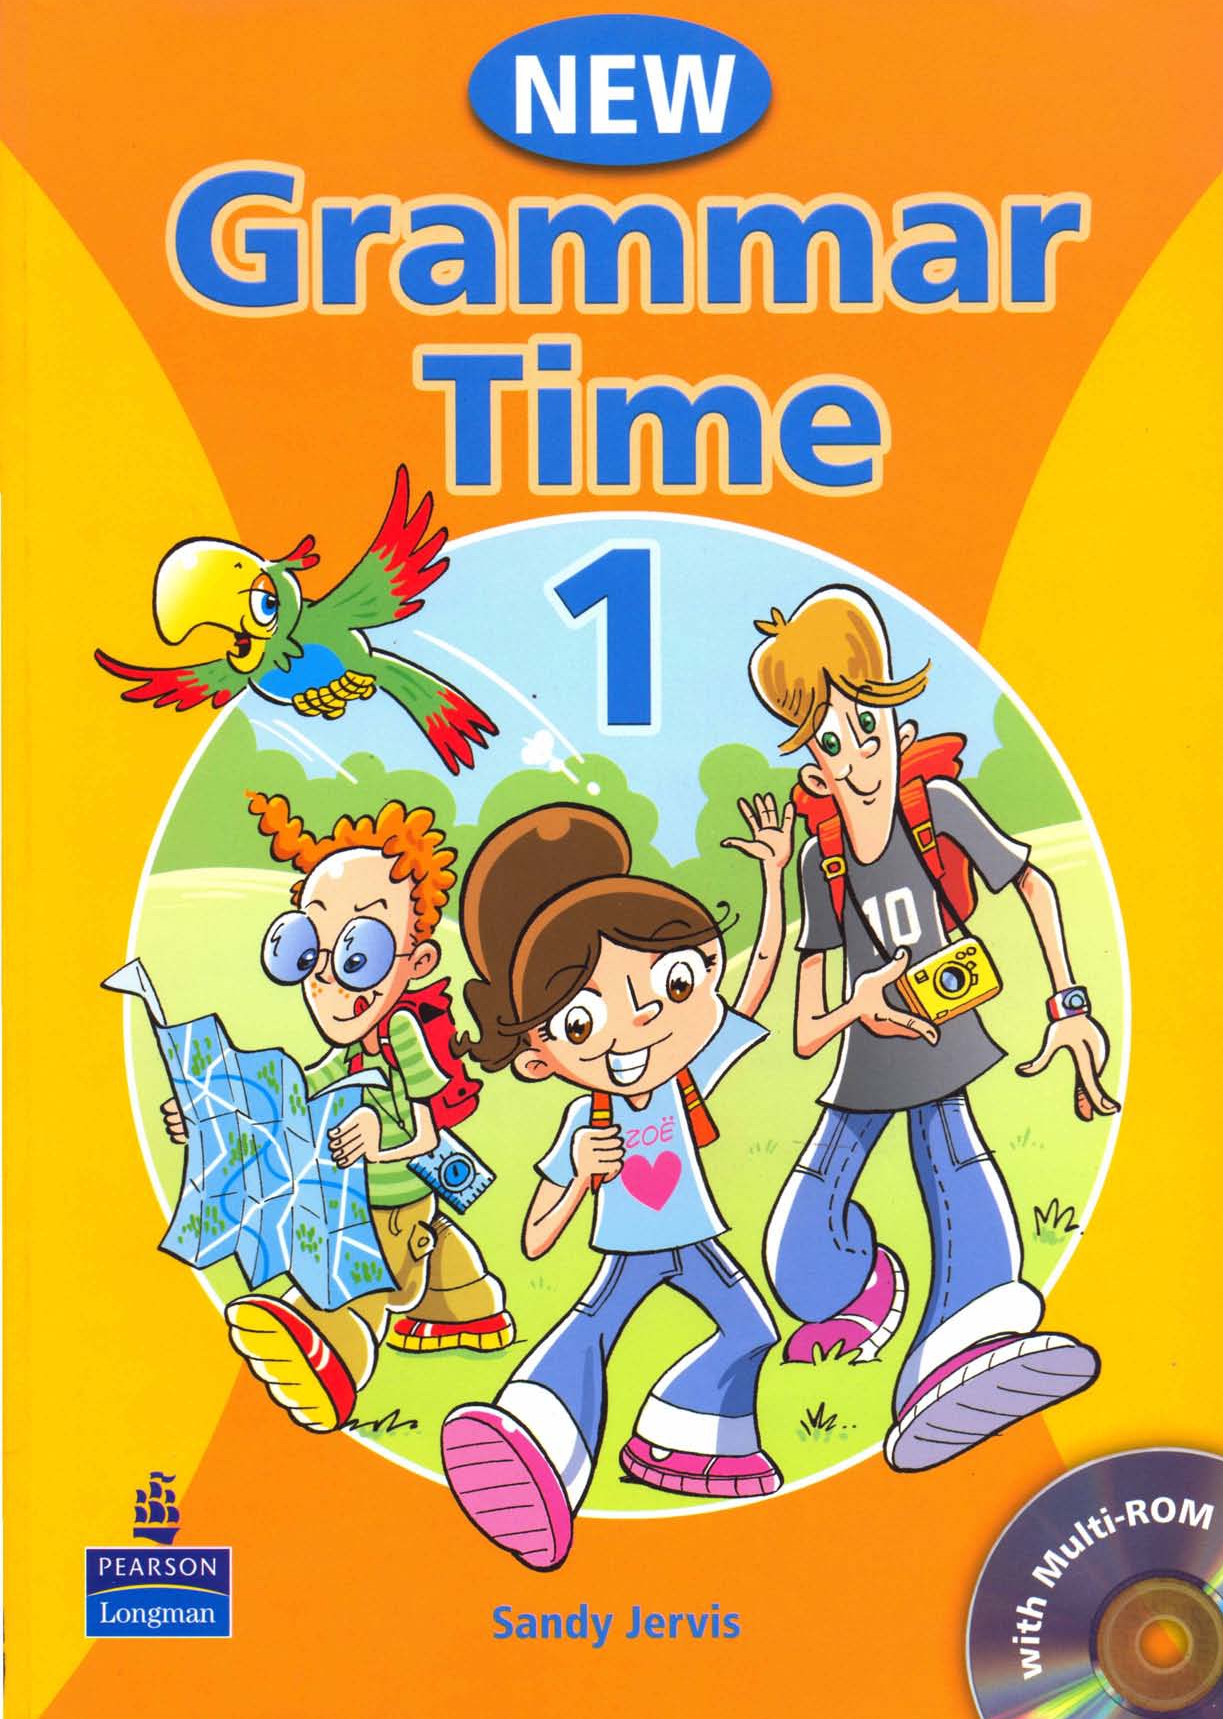 كتاب تعلم قواعد اللغة الإنجليزية للصف الأول الابتدائي New Grammar Time 1 with Multi-rom